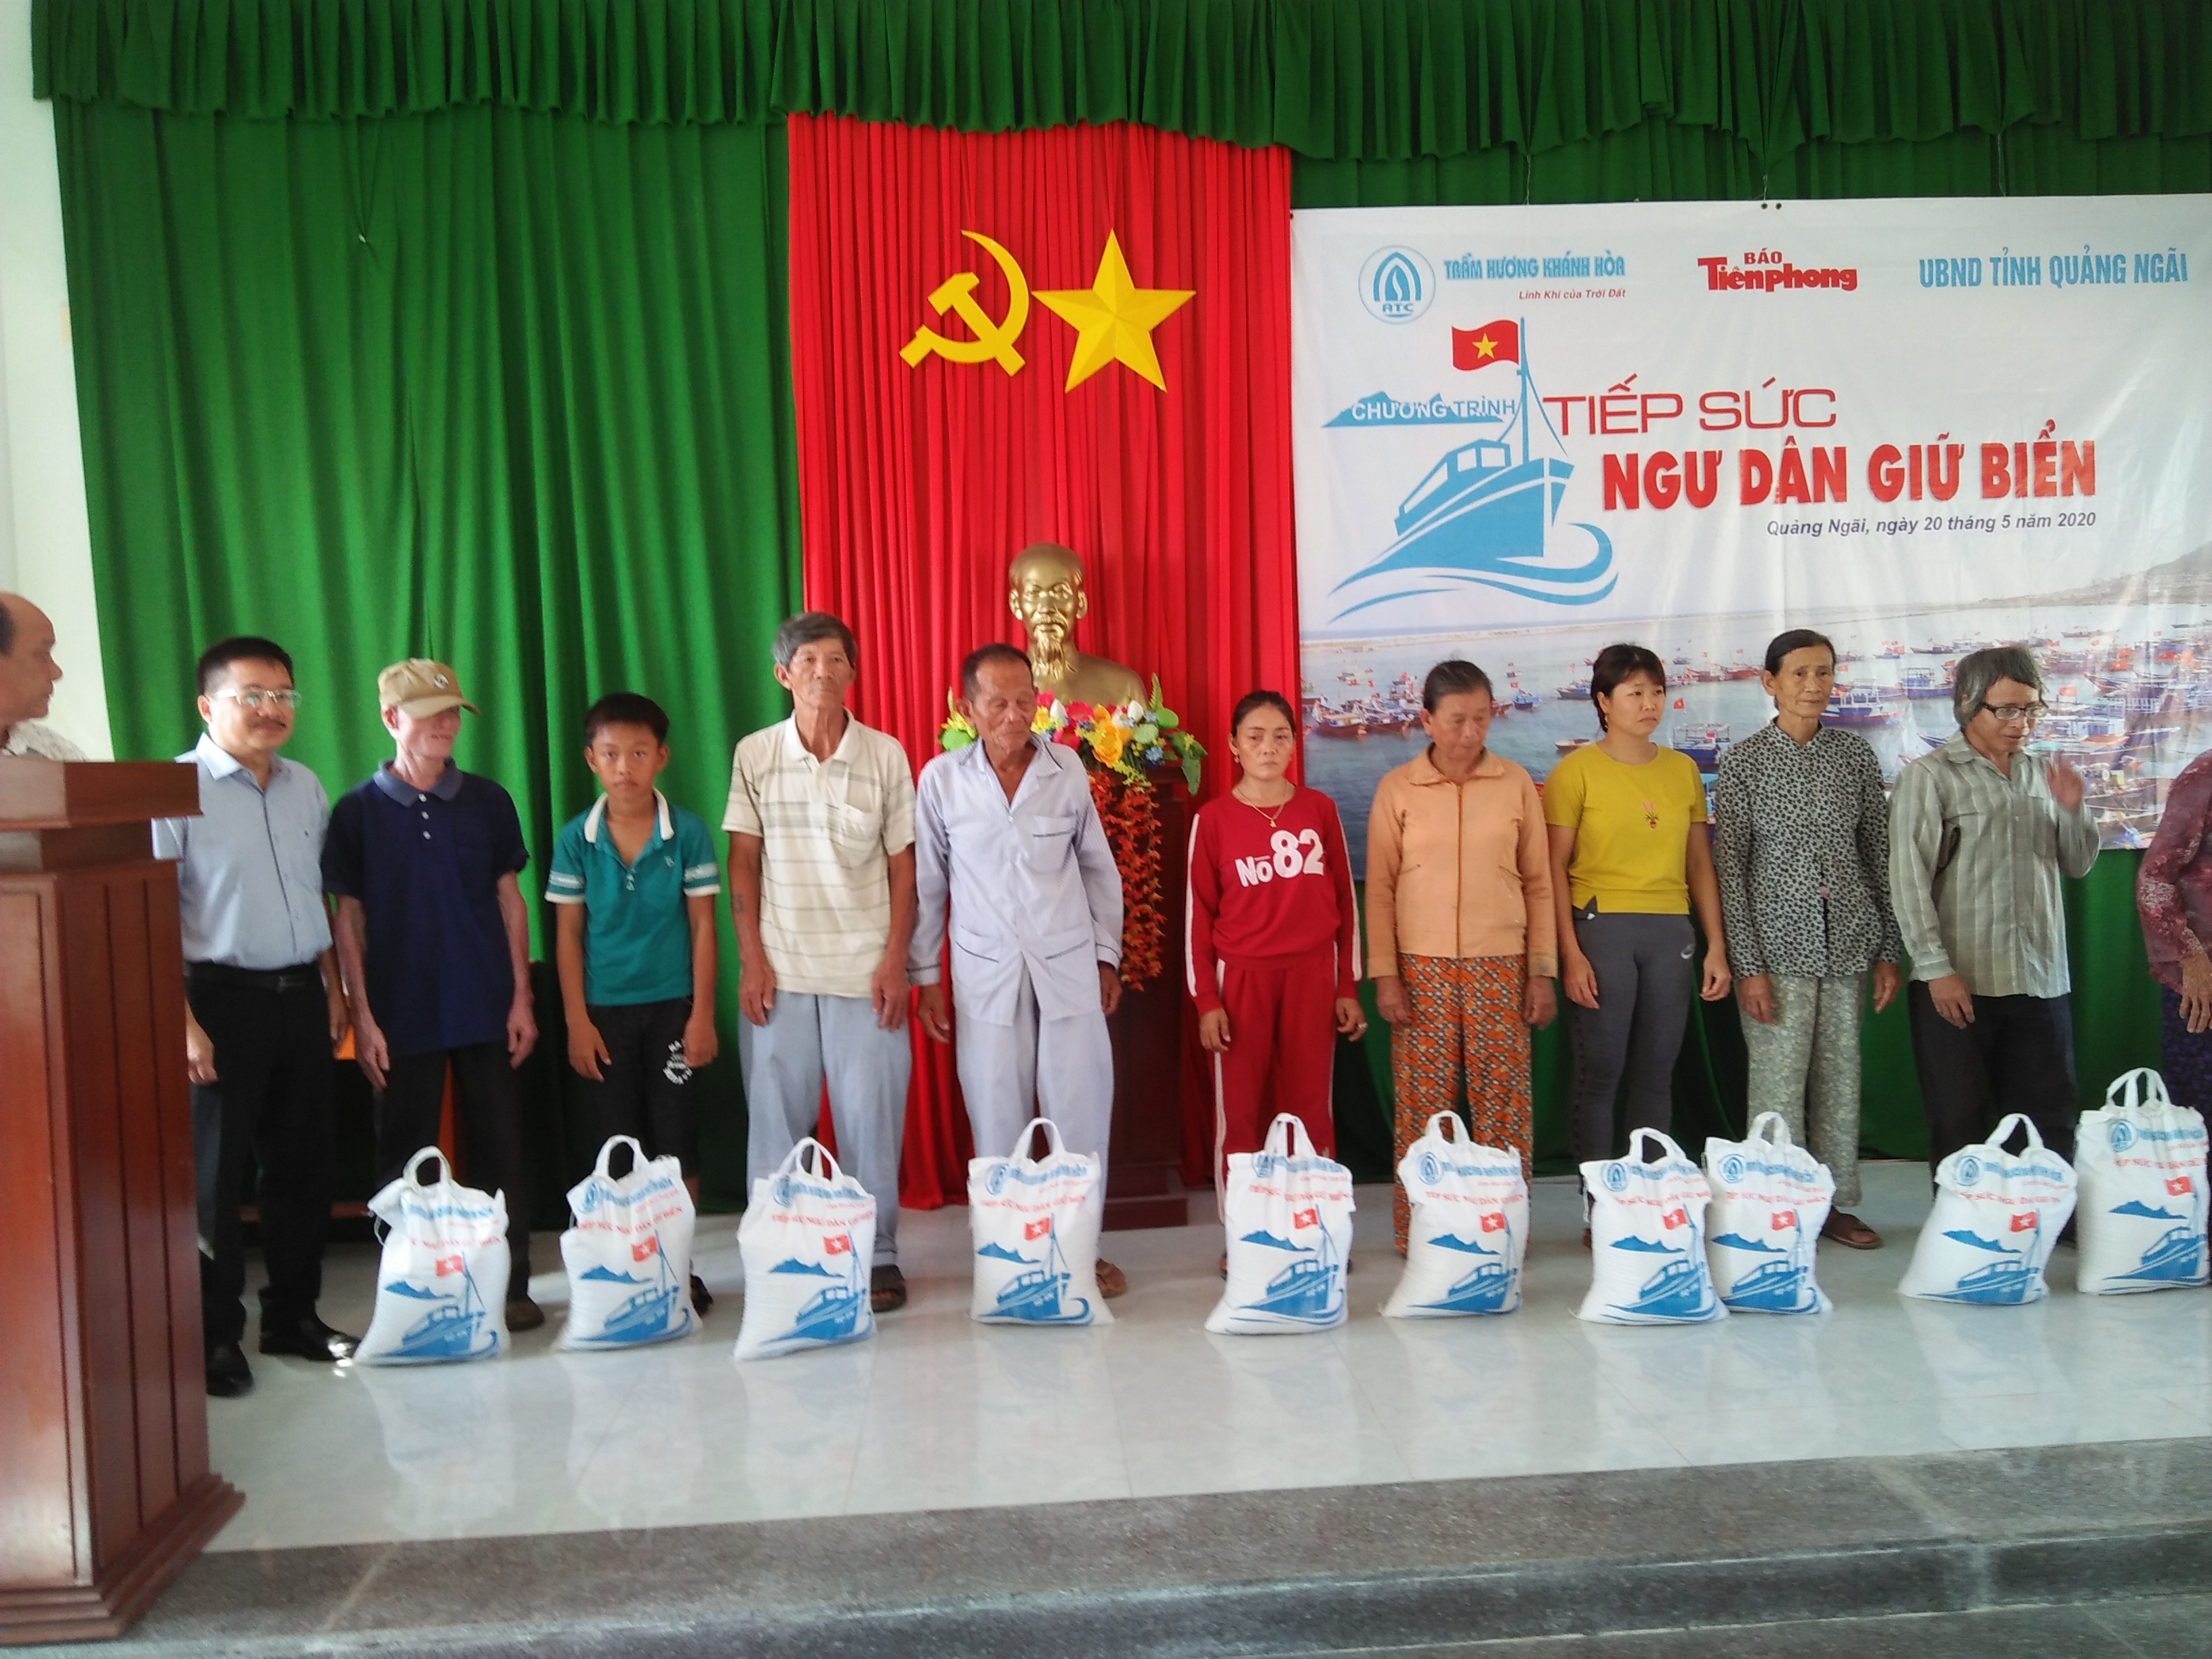 Lý Sơn: Trao quà cho người dân bị thiệt hại do bão số 9 và học sinh nghèo hiếu học